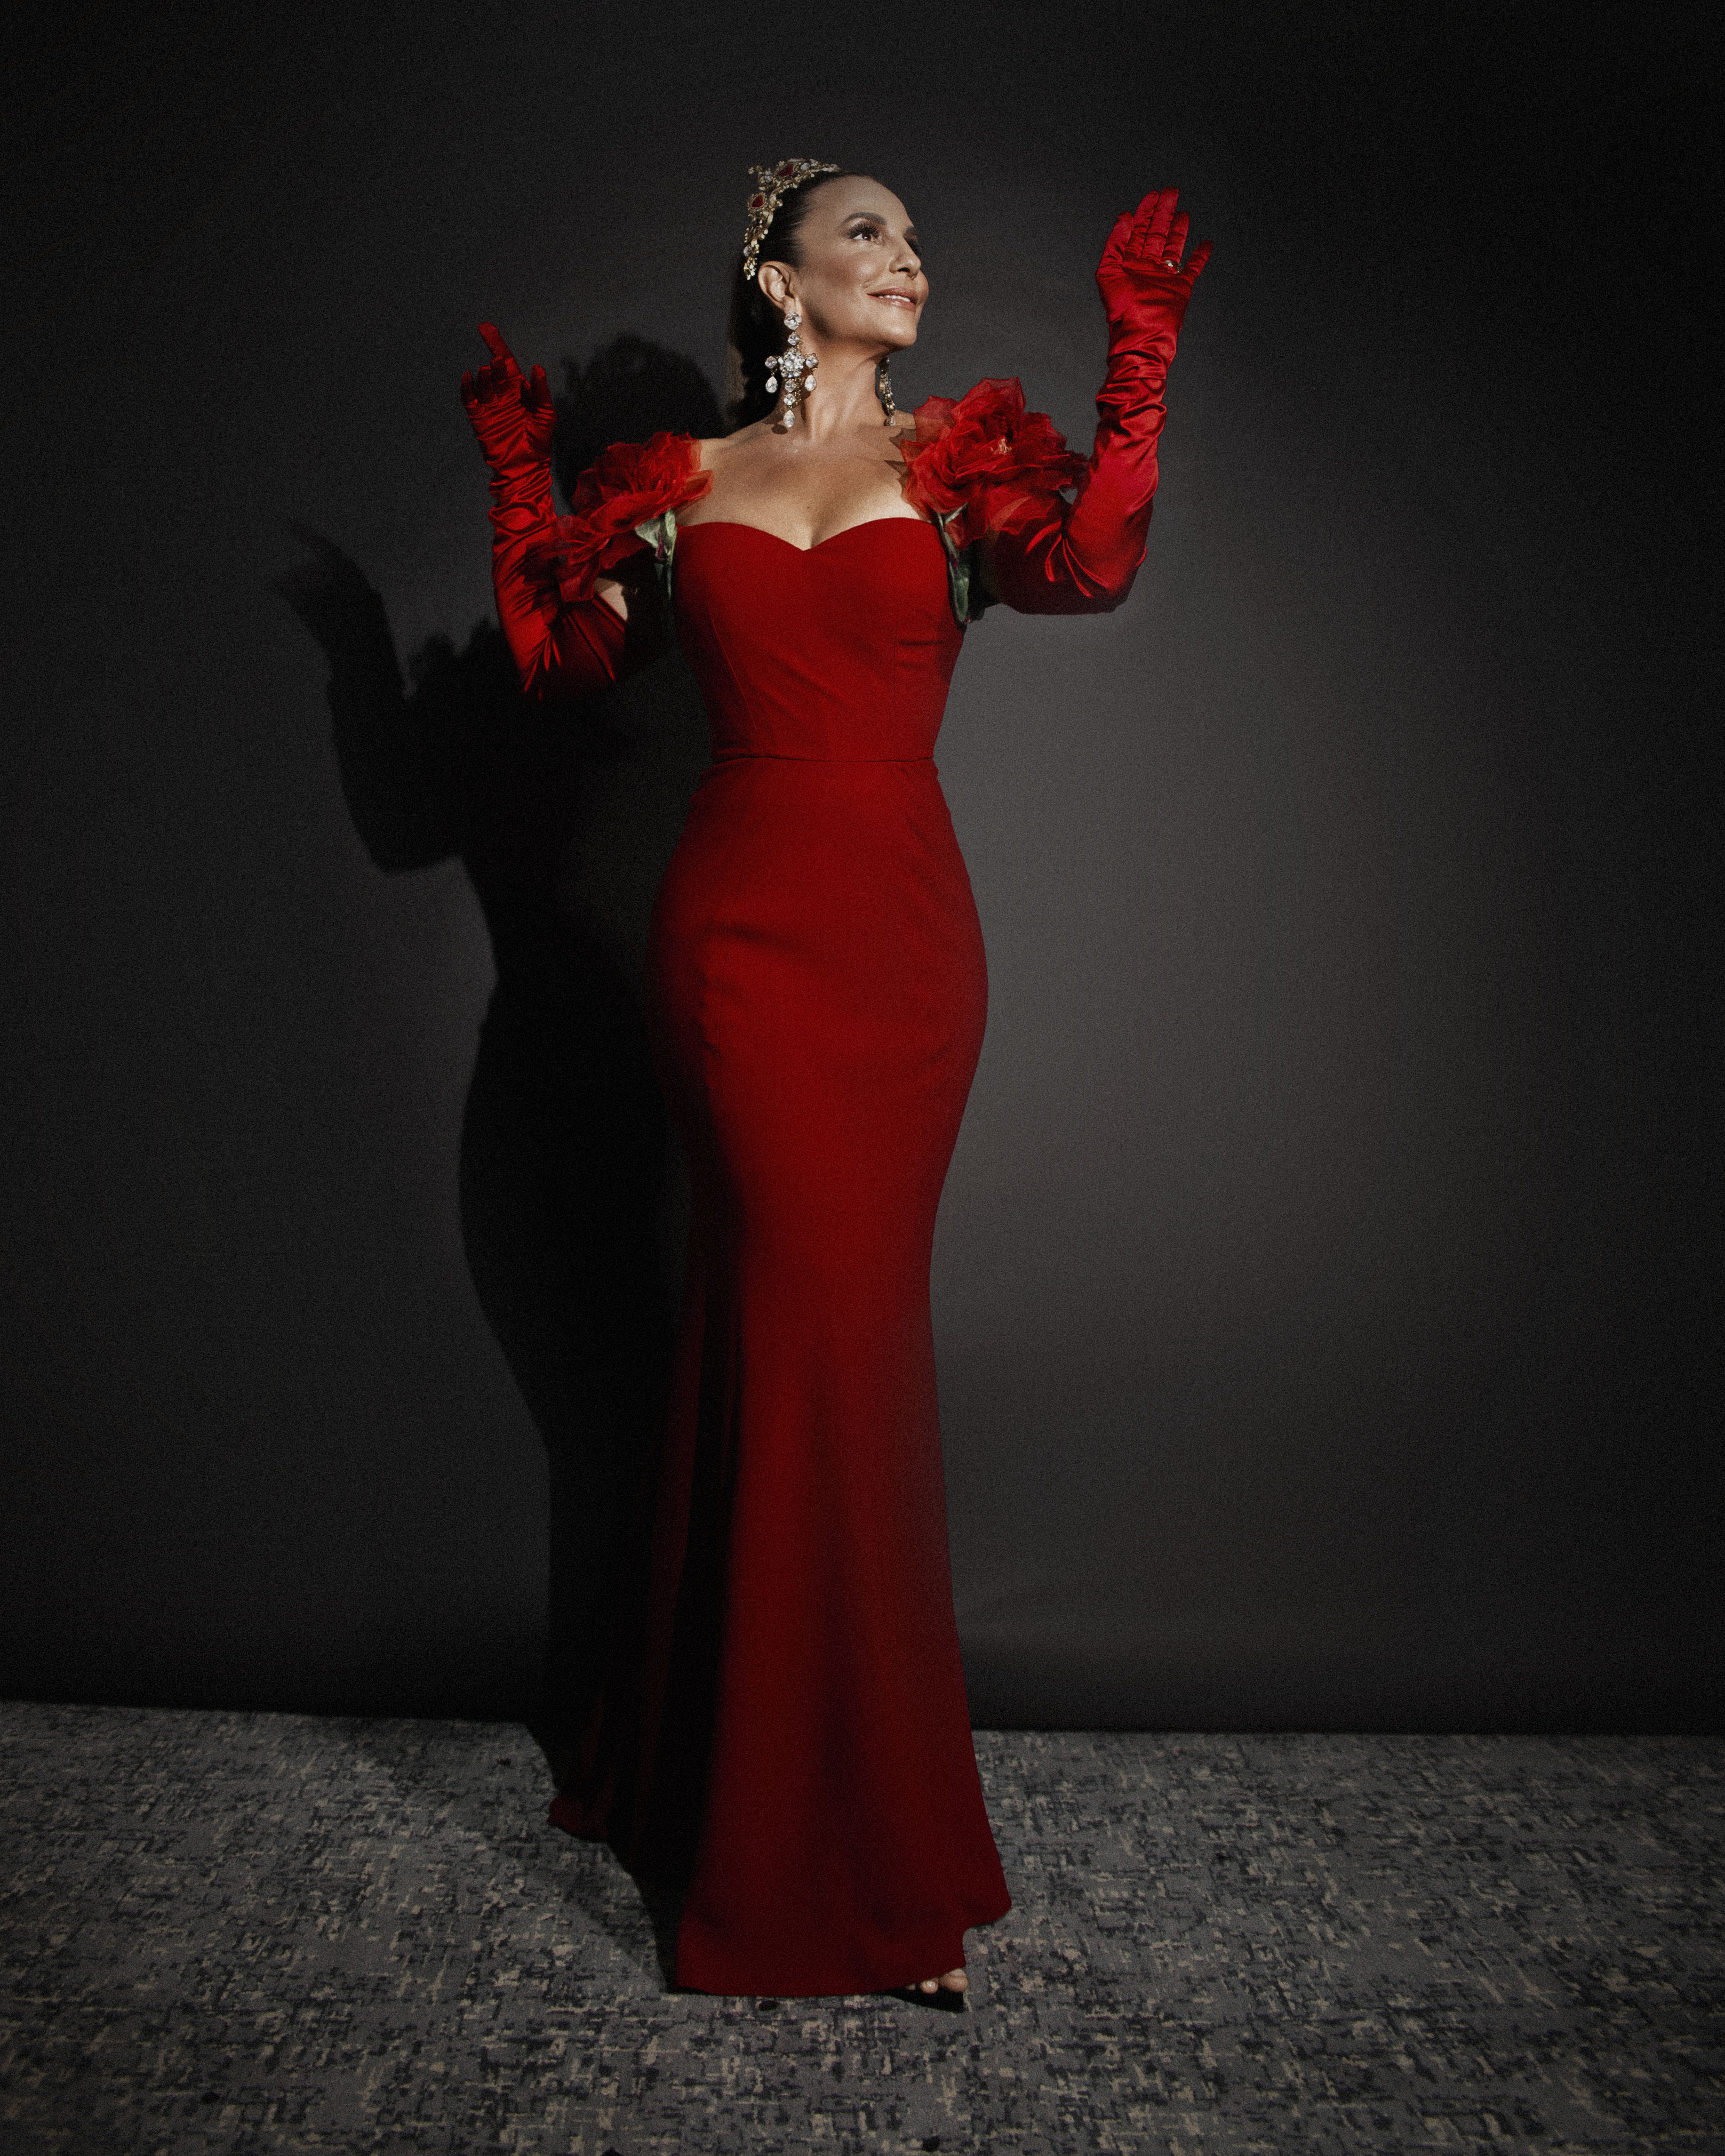 Ivete Sangalo anuncia seu tema para o Carnaval 2020, “O Reino de Mainha”, com um look exclusivo da Dolce & Gabbana